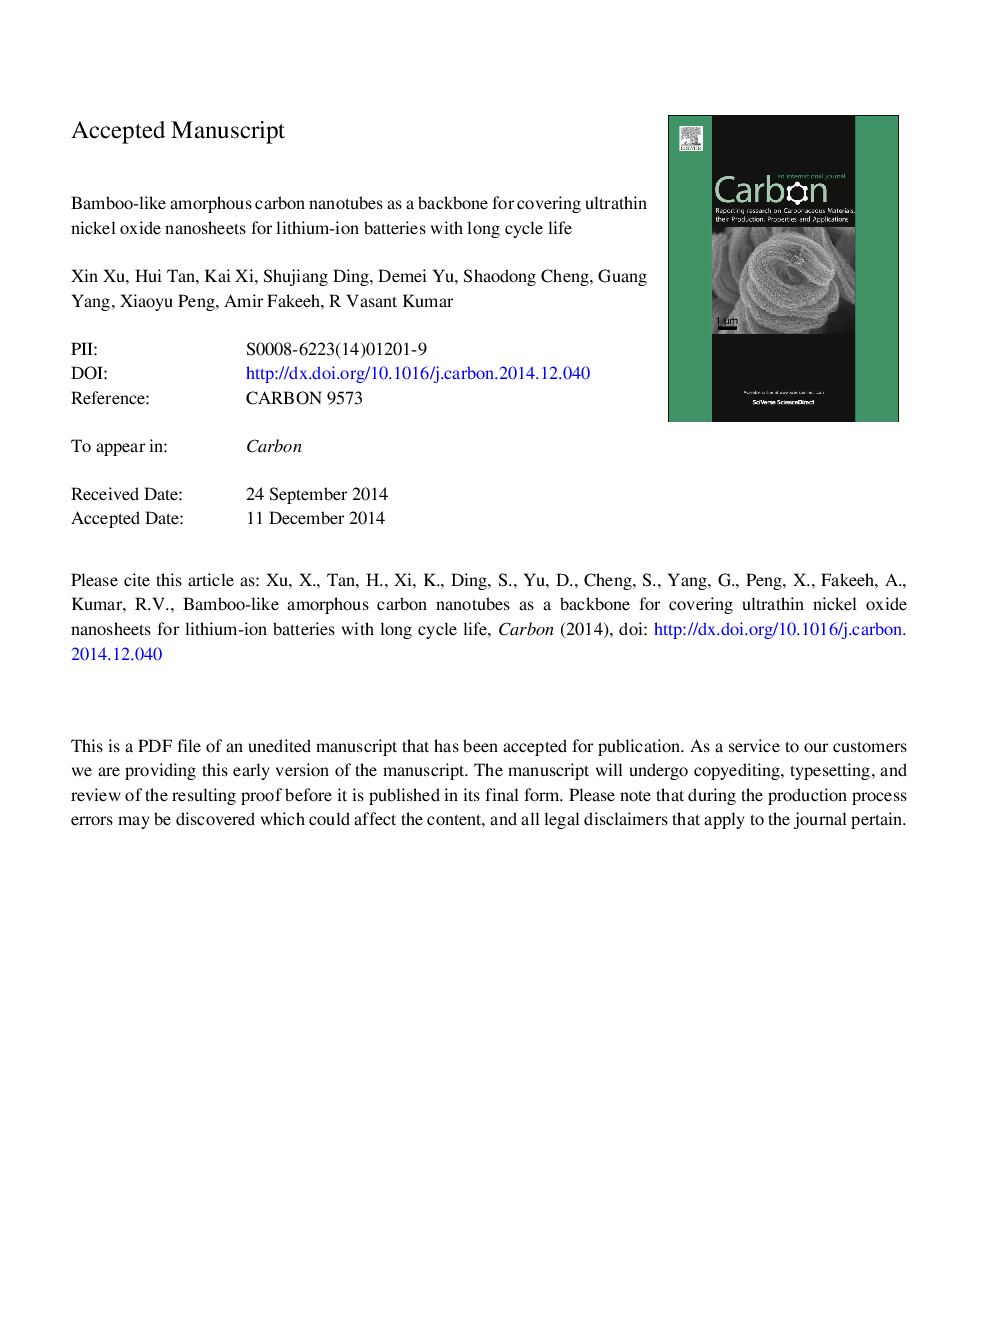 نانولوله های کربنی آمورف مانند بامبو مانند در نانوساختارهای اکسید نیکل برای الکترود باتری لیتیوم یونی با زندگی چرخه طولانی 